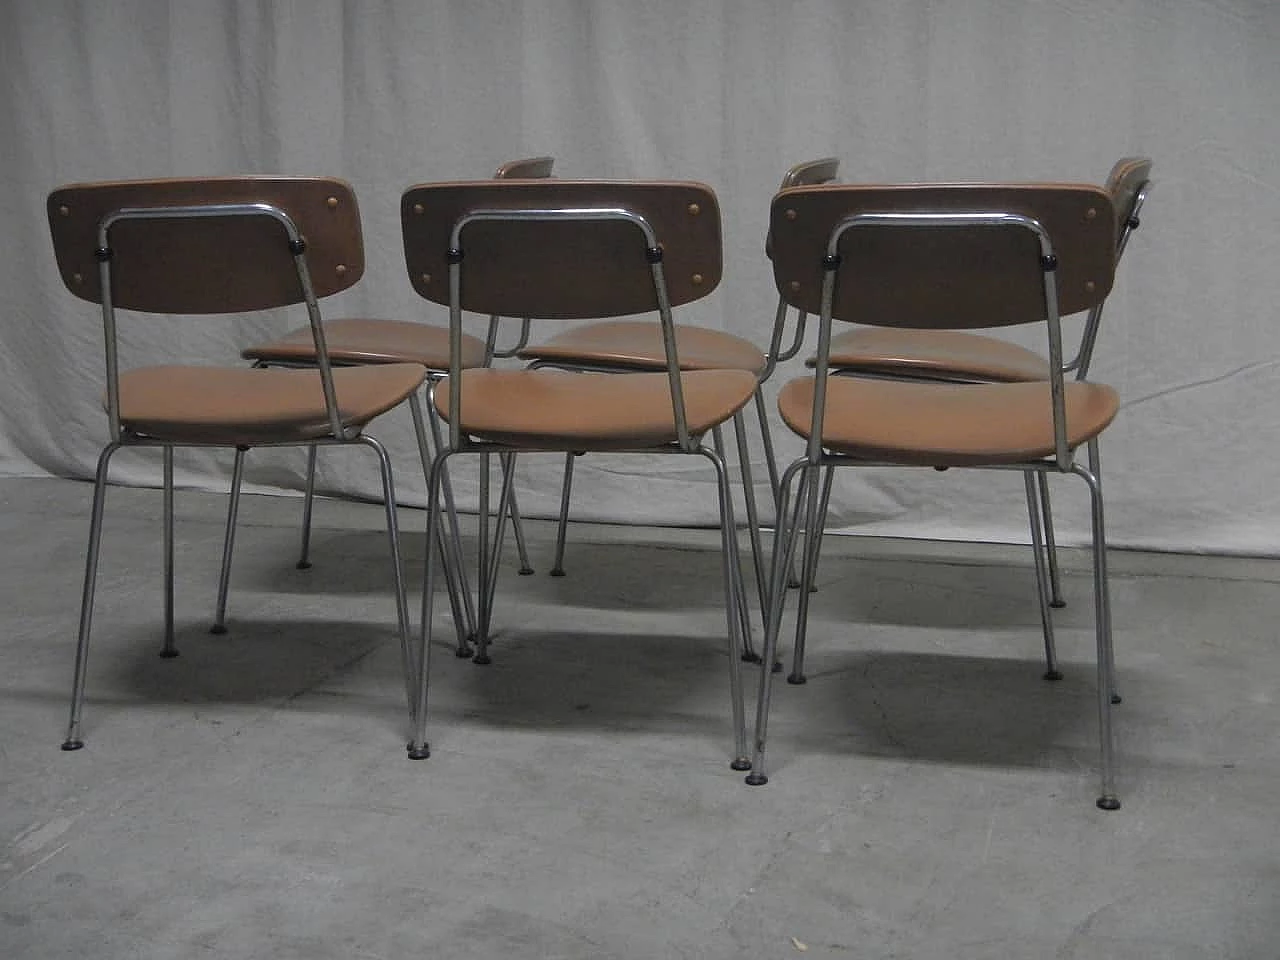 6 skai chairs, '70s 1062031